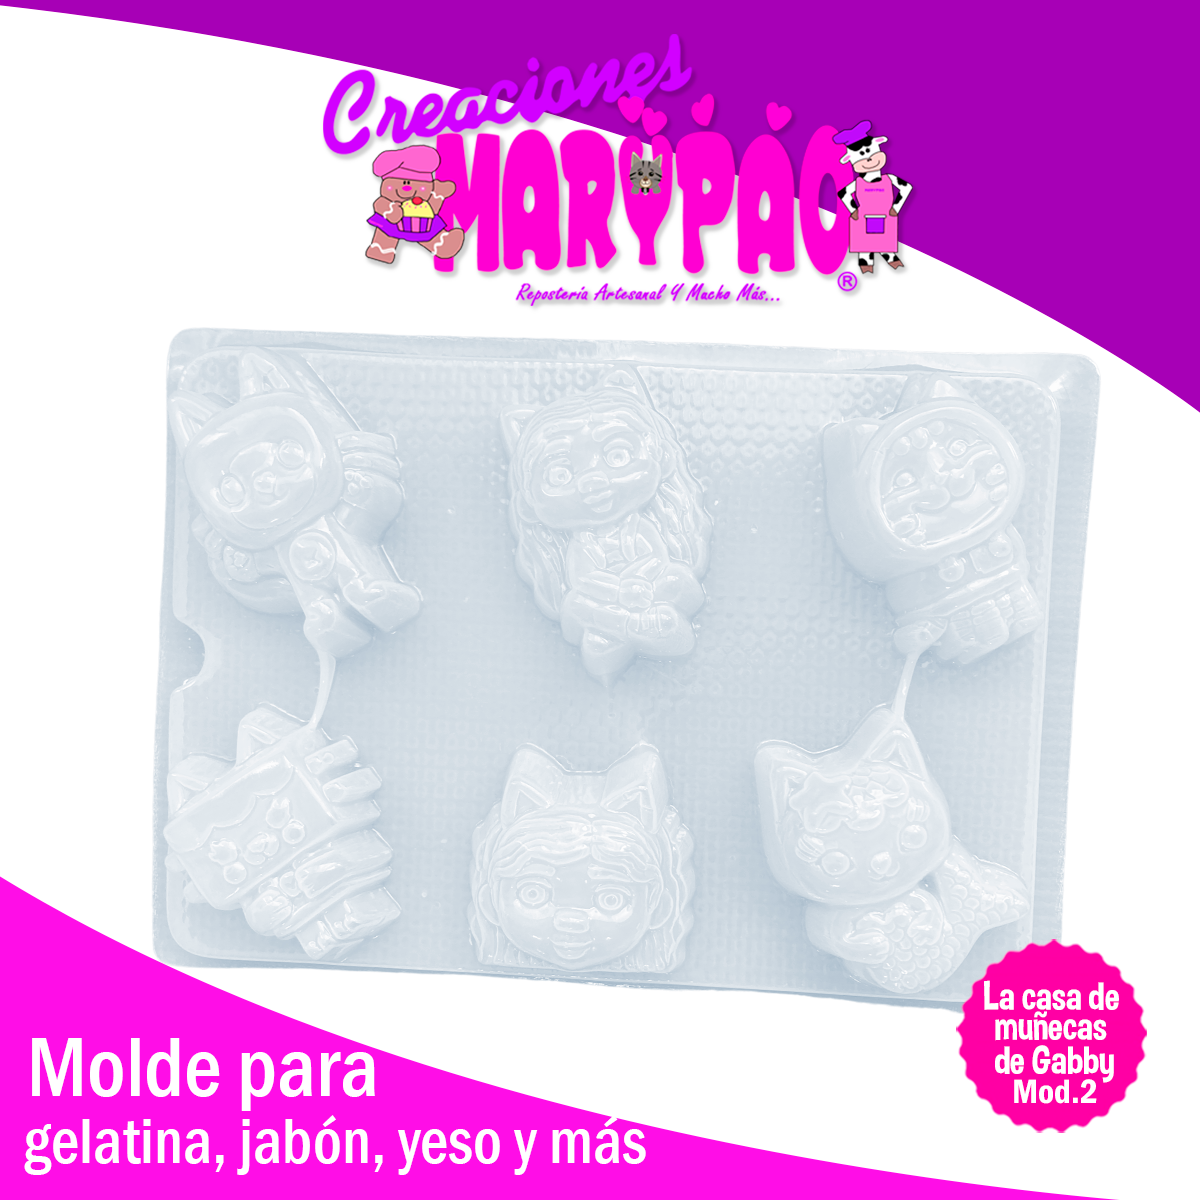 http://creacionesmarypao.com/cdn/shop/files/molde-La-casa-de-muneca--de-Gabby-personajes-gelatinas-jabones-yeso-creaciones-marypao-mod2.png?v=1695068999